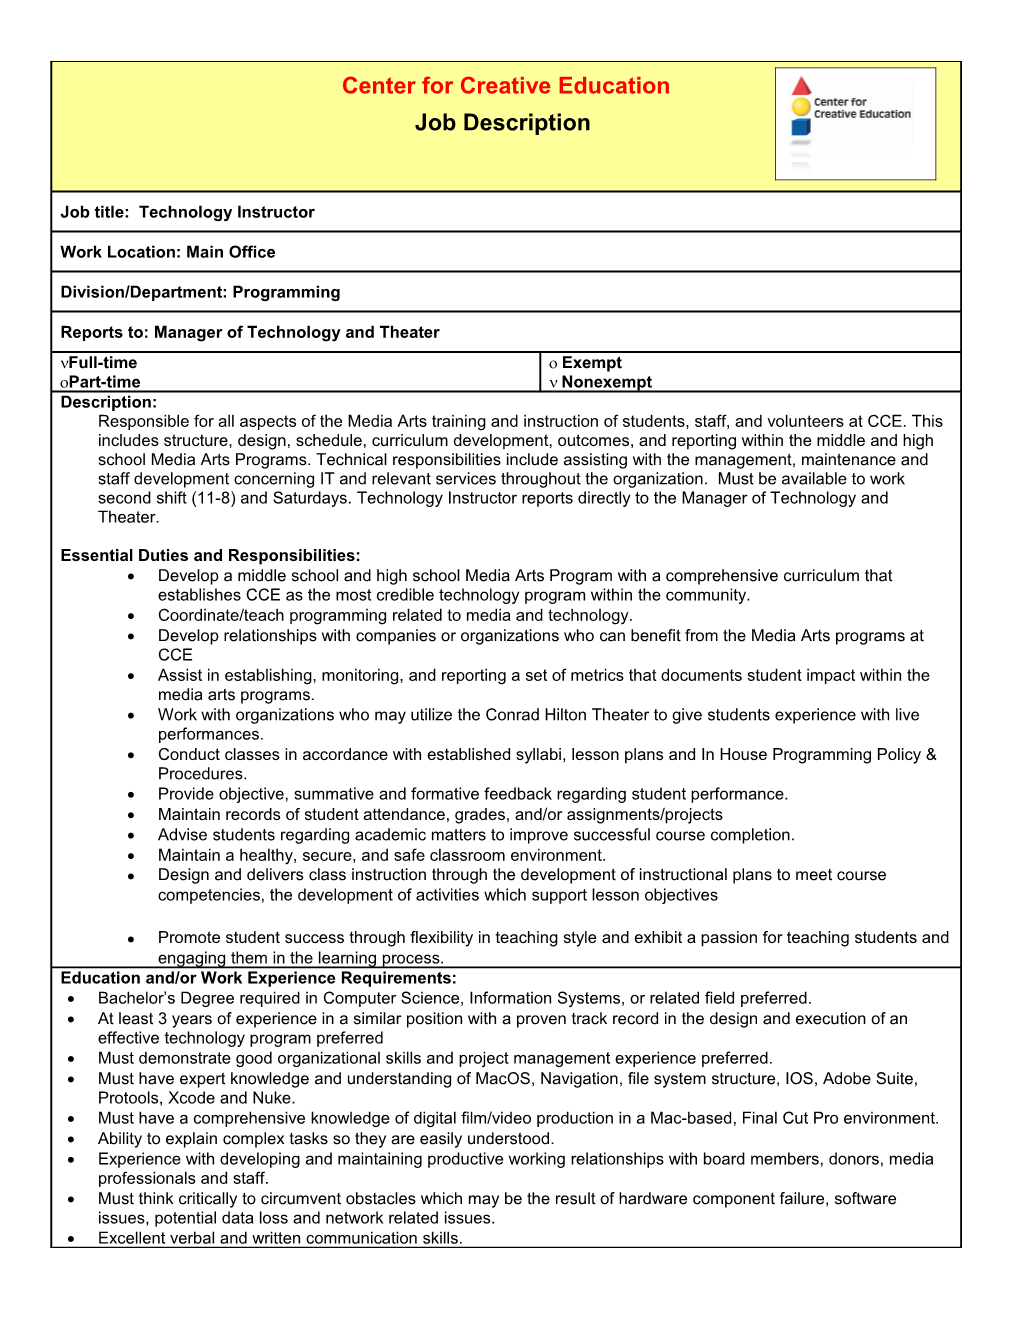 Job Description Form s7